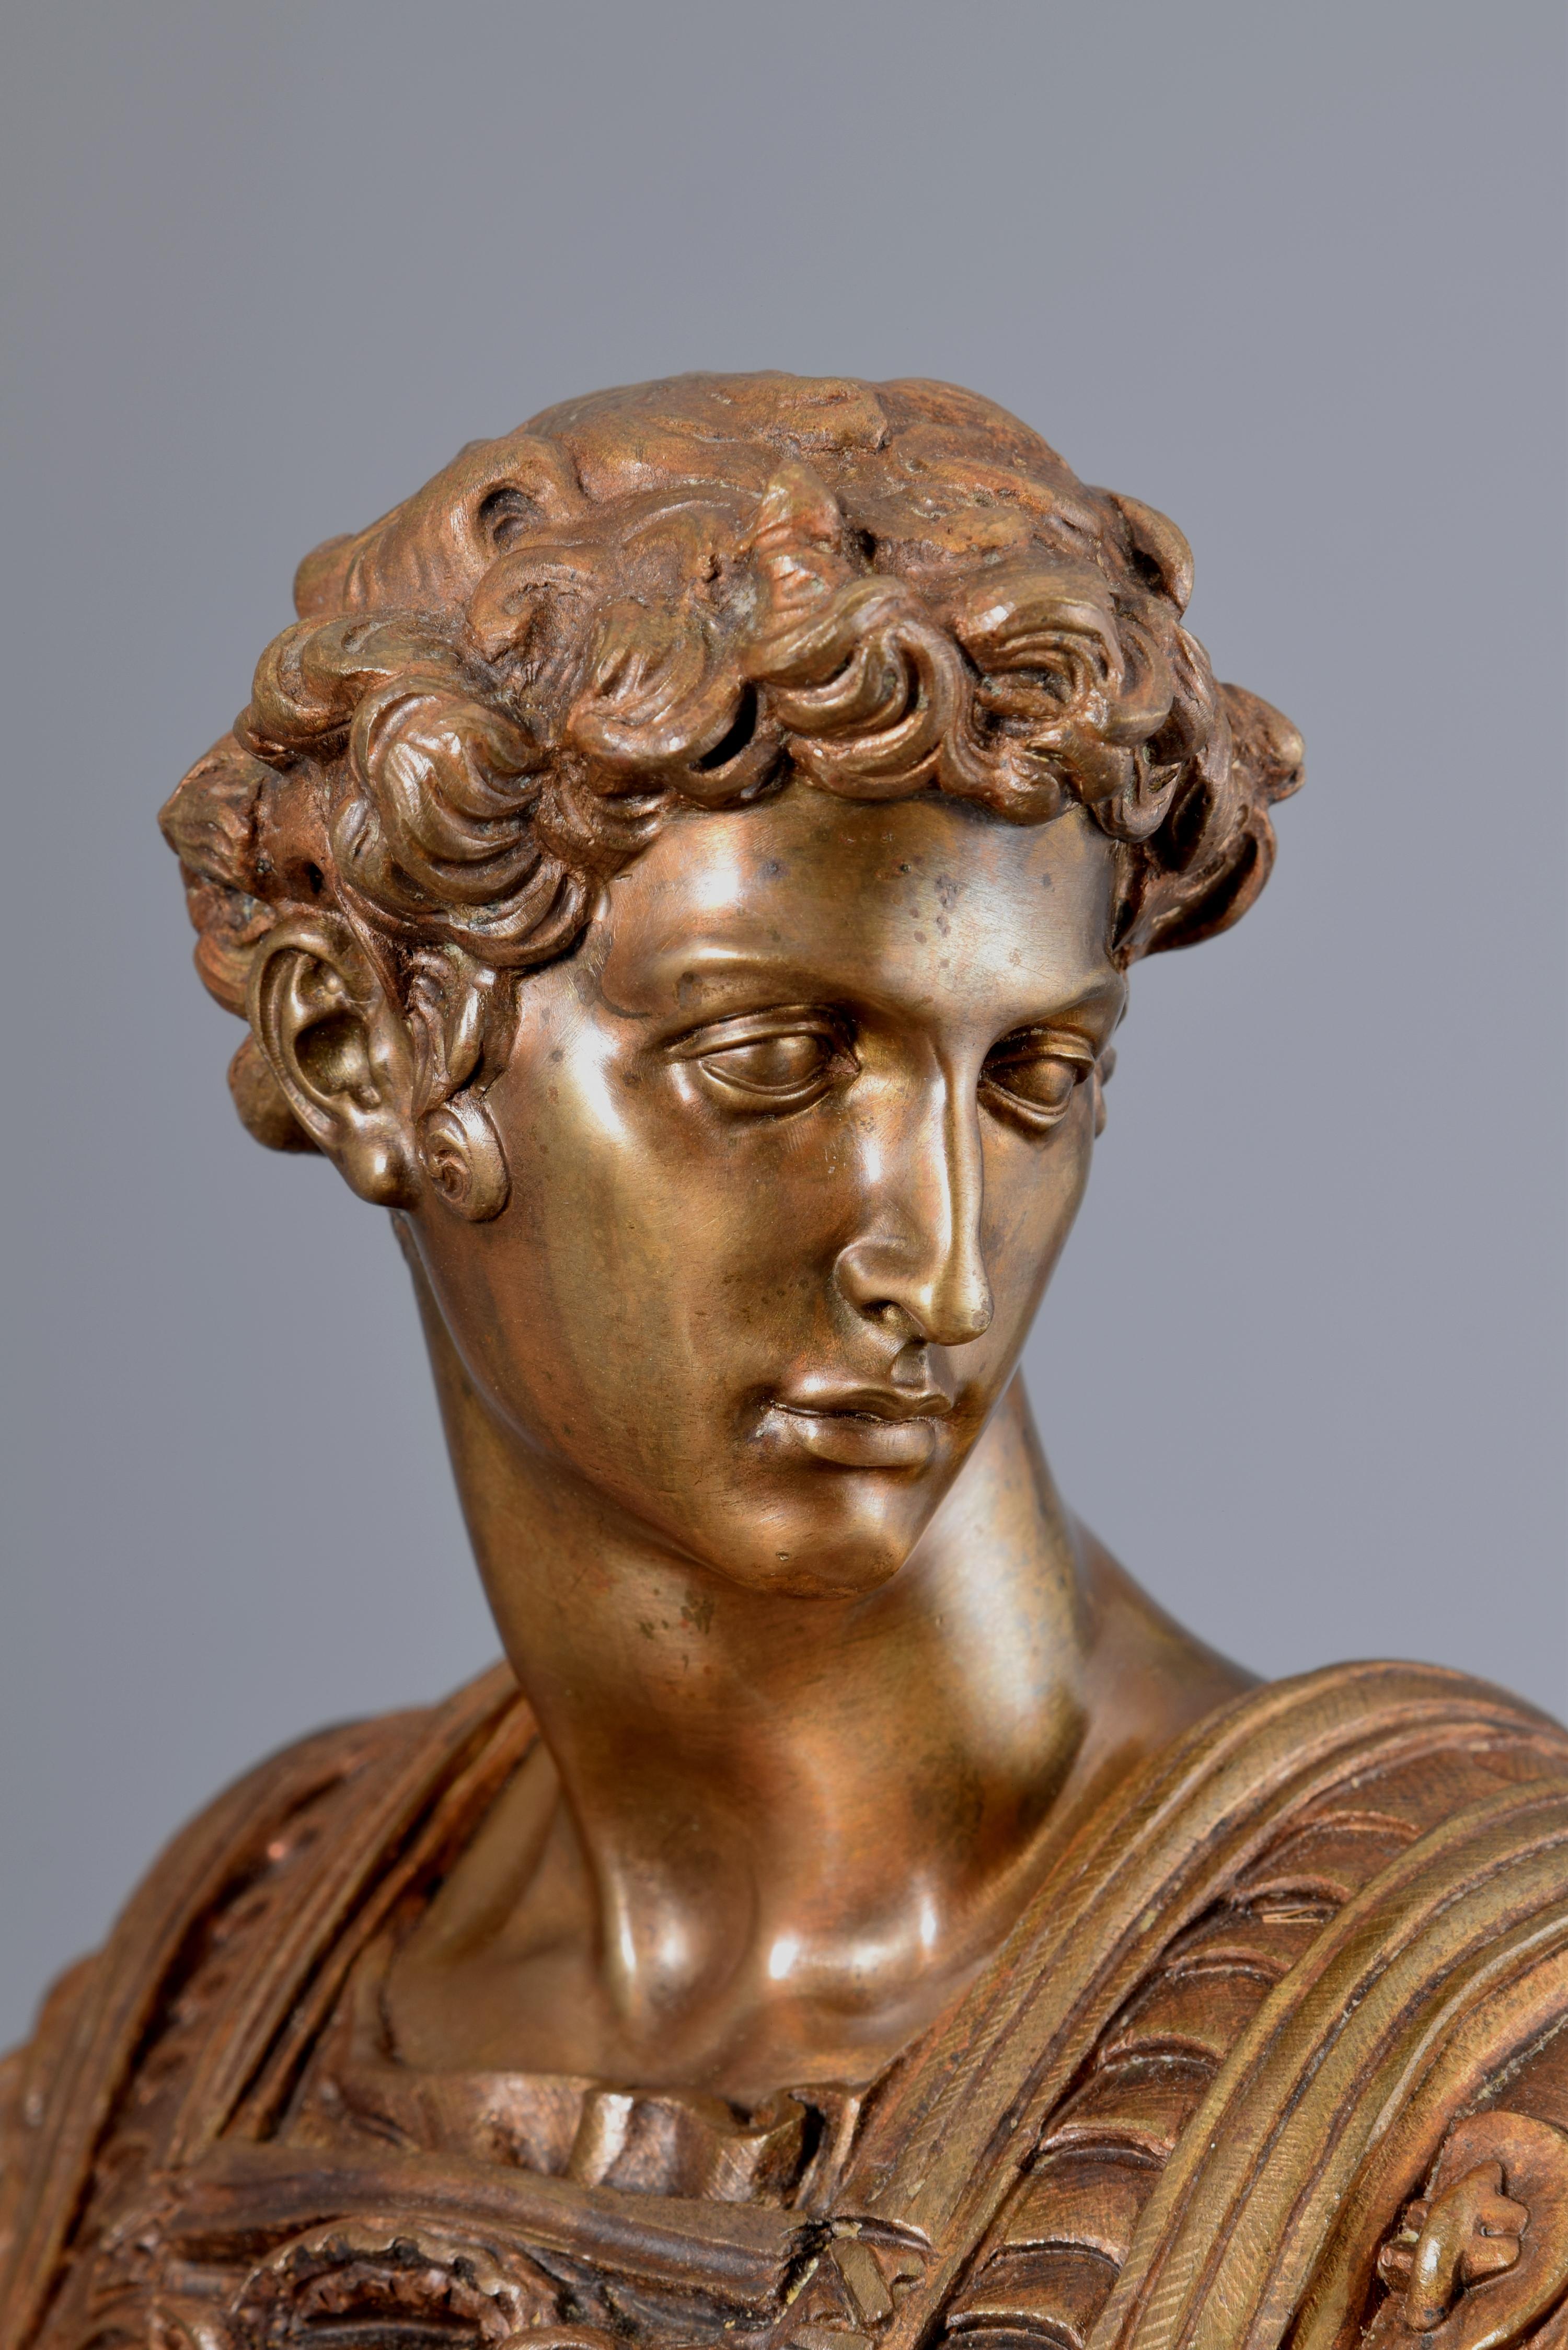 19th Century Bronze, Giuliano Di Lorenzo de Medici, France, After Michelangelo Buonarroti